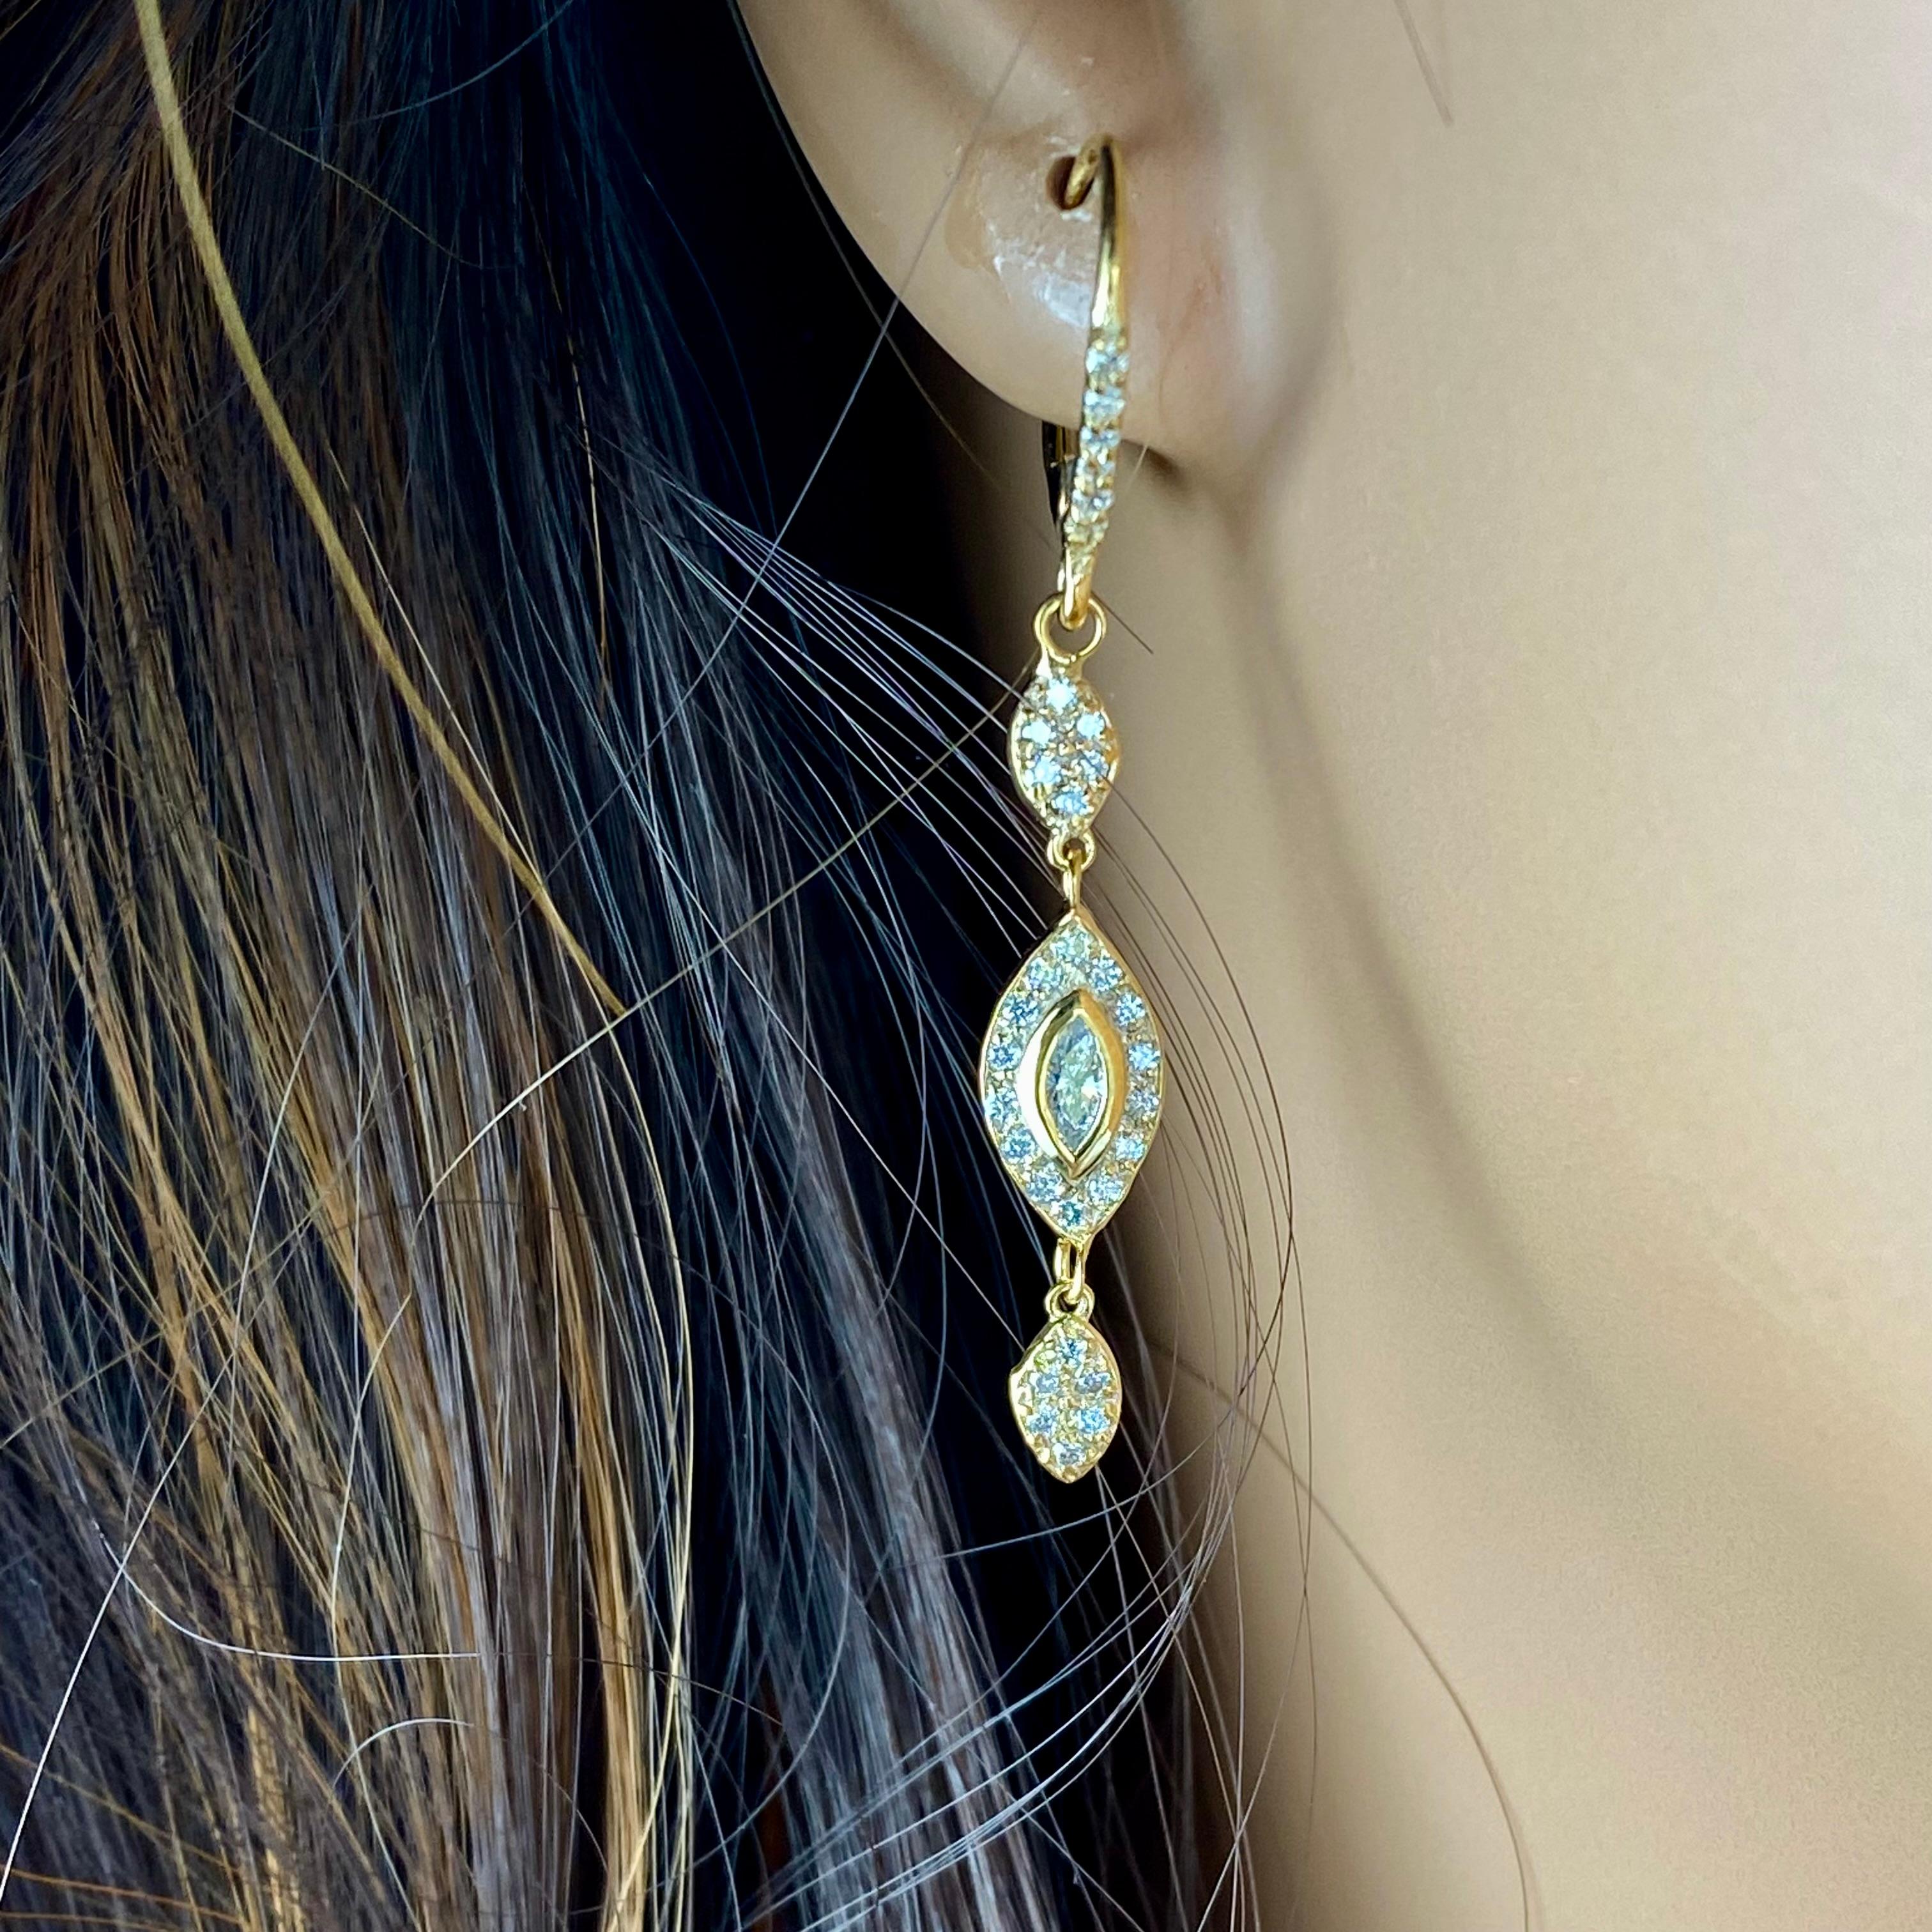 Voici nos exquises boucles d'oreilles en or jaune 18 carats et diamants, conçues pour captiver par leur élégance intemporelle et leur superbe savoir-faire. Ces boucles d'oreilles présentent deux magnifiques diamants taille marquise, pesant chacun